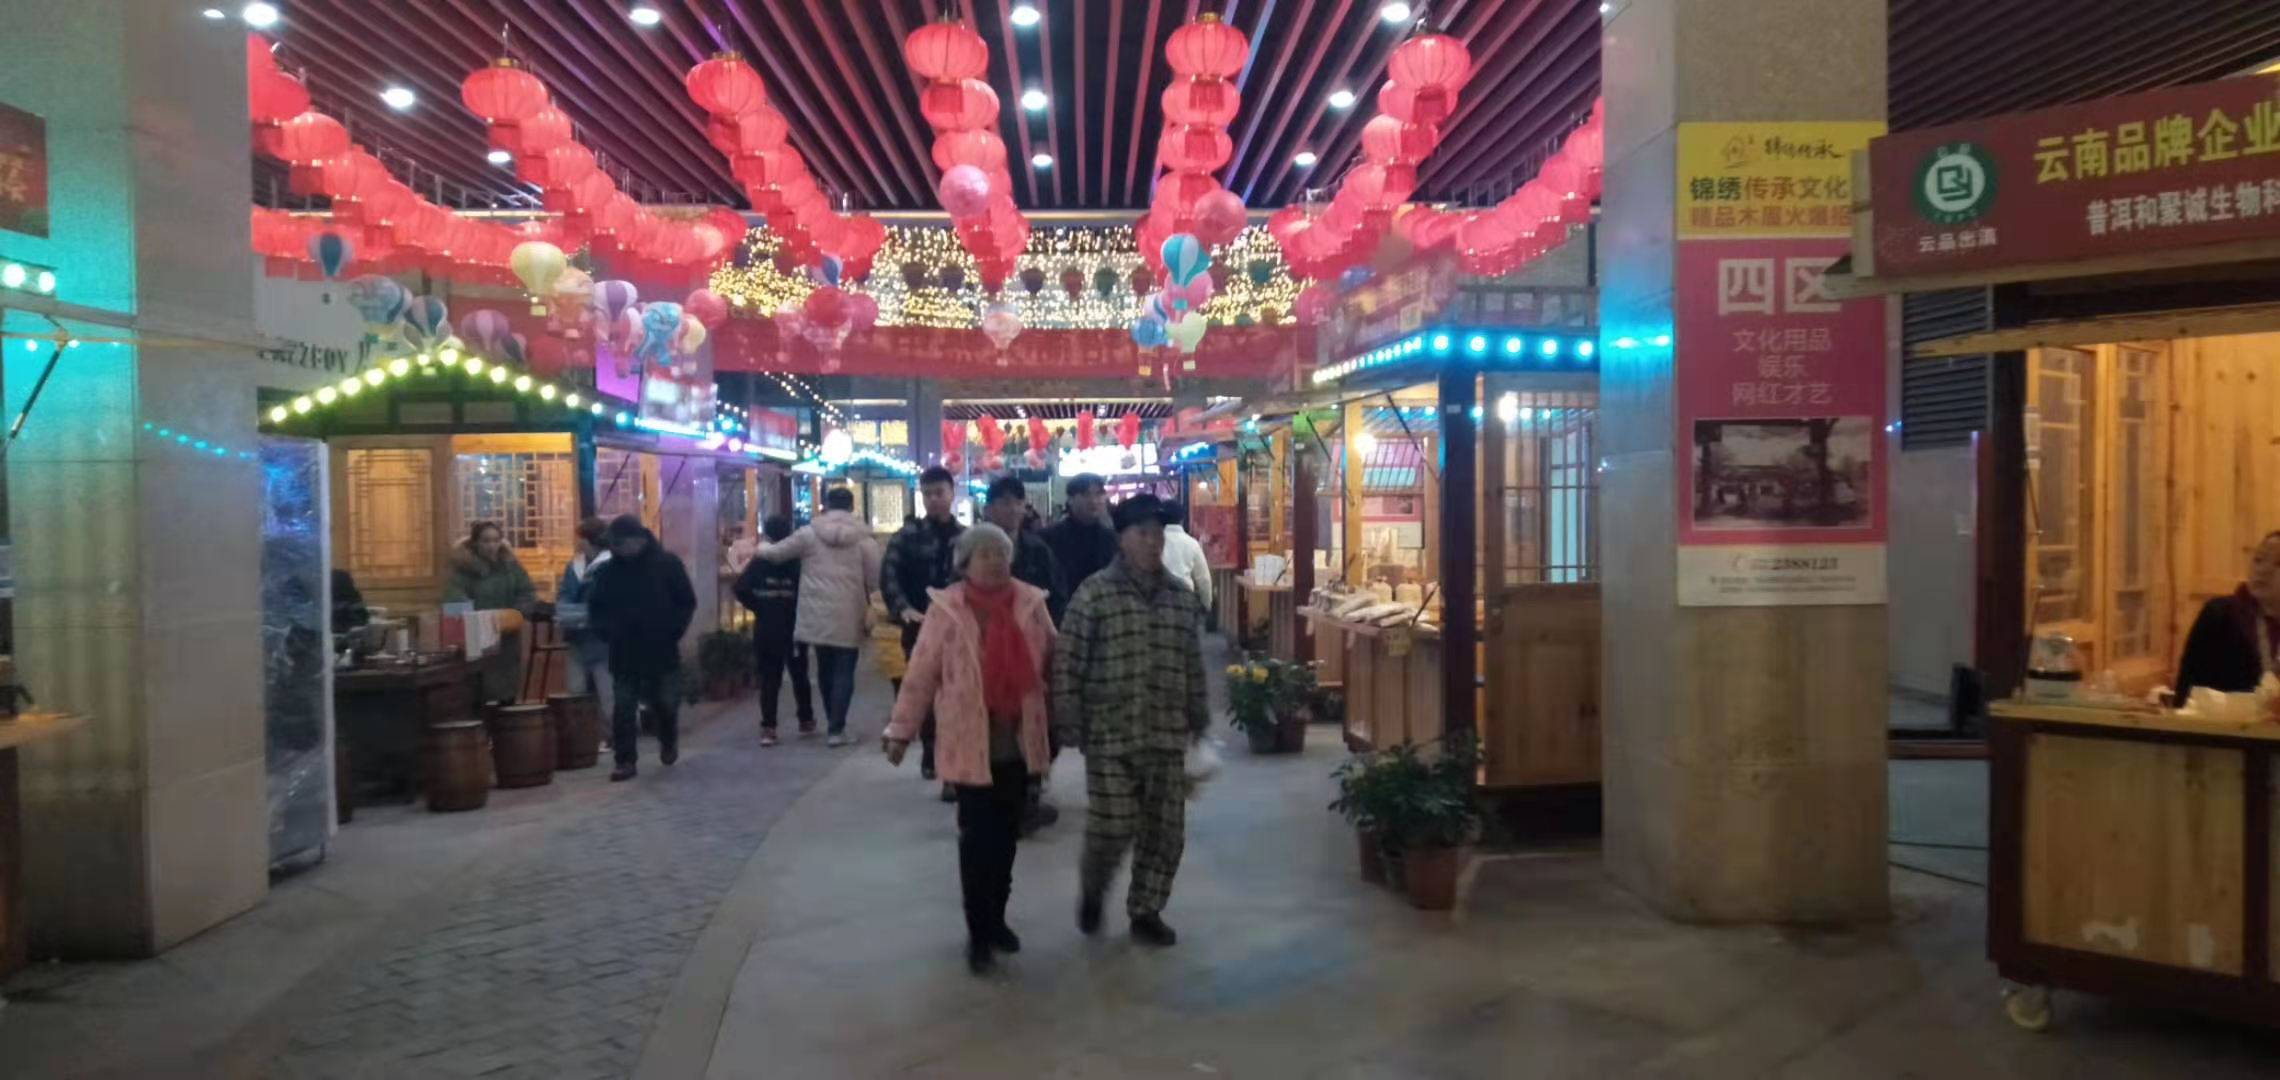 吃喝玩乐传统文化一条街！怀化锦绣五溪年博会于2021年1月1日开幕